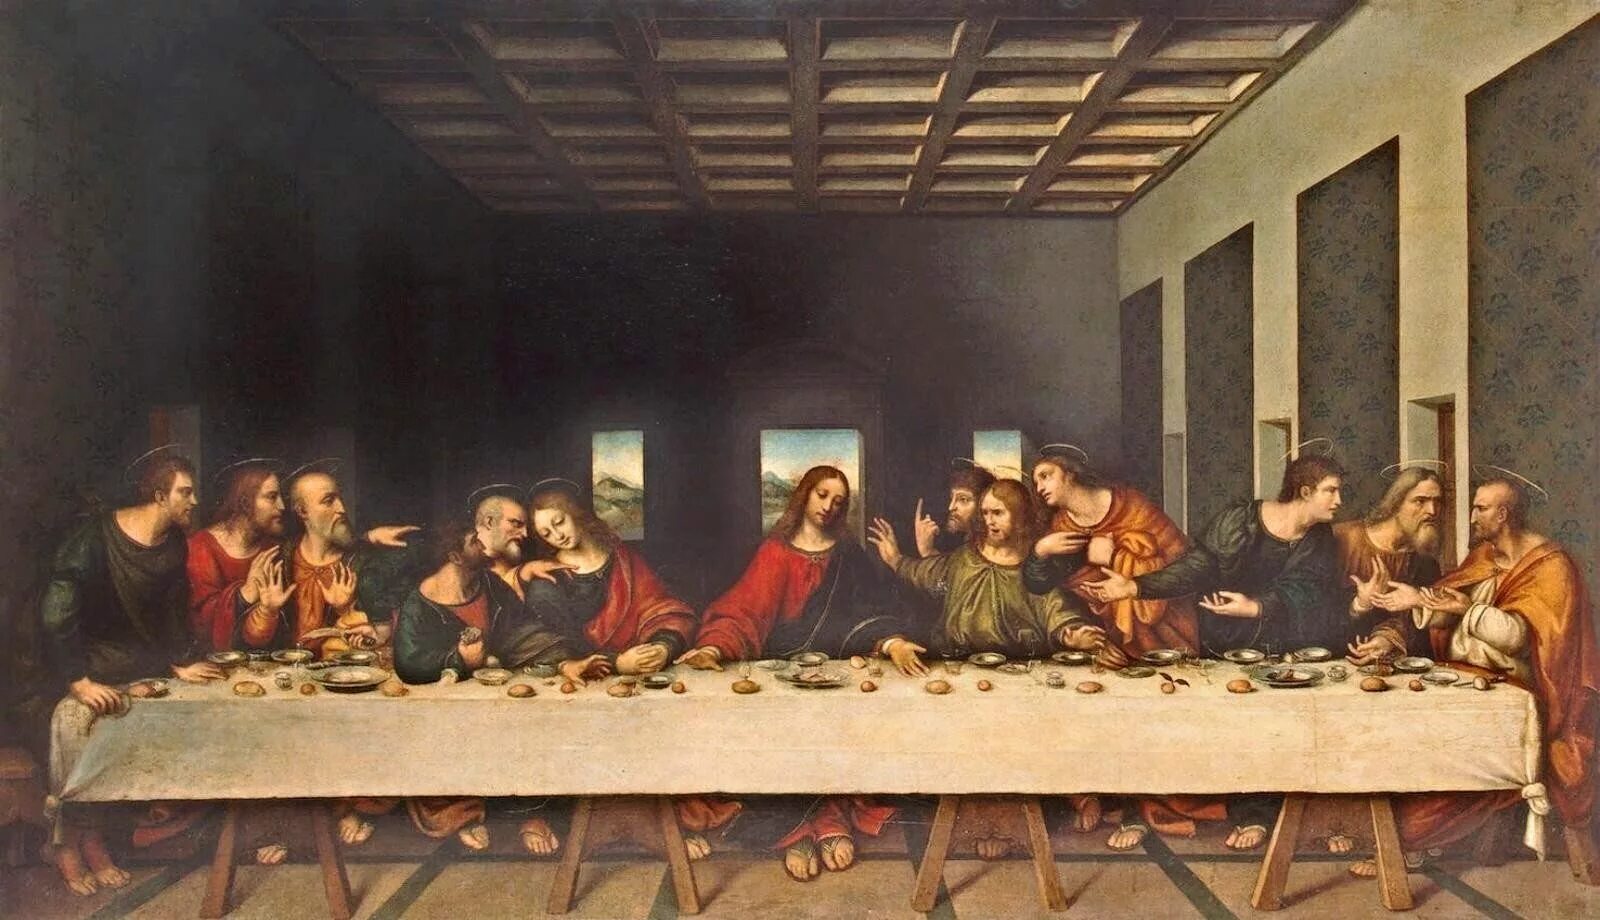 Тайна вечери да винчи. Тайная вечеря картина Леонардо. Леонардо да Винчи «Тайная вечеря» 1495–1498.. Леонардо Давинчи твйная вечера. Леонардо да винчт ьайная вечнря.